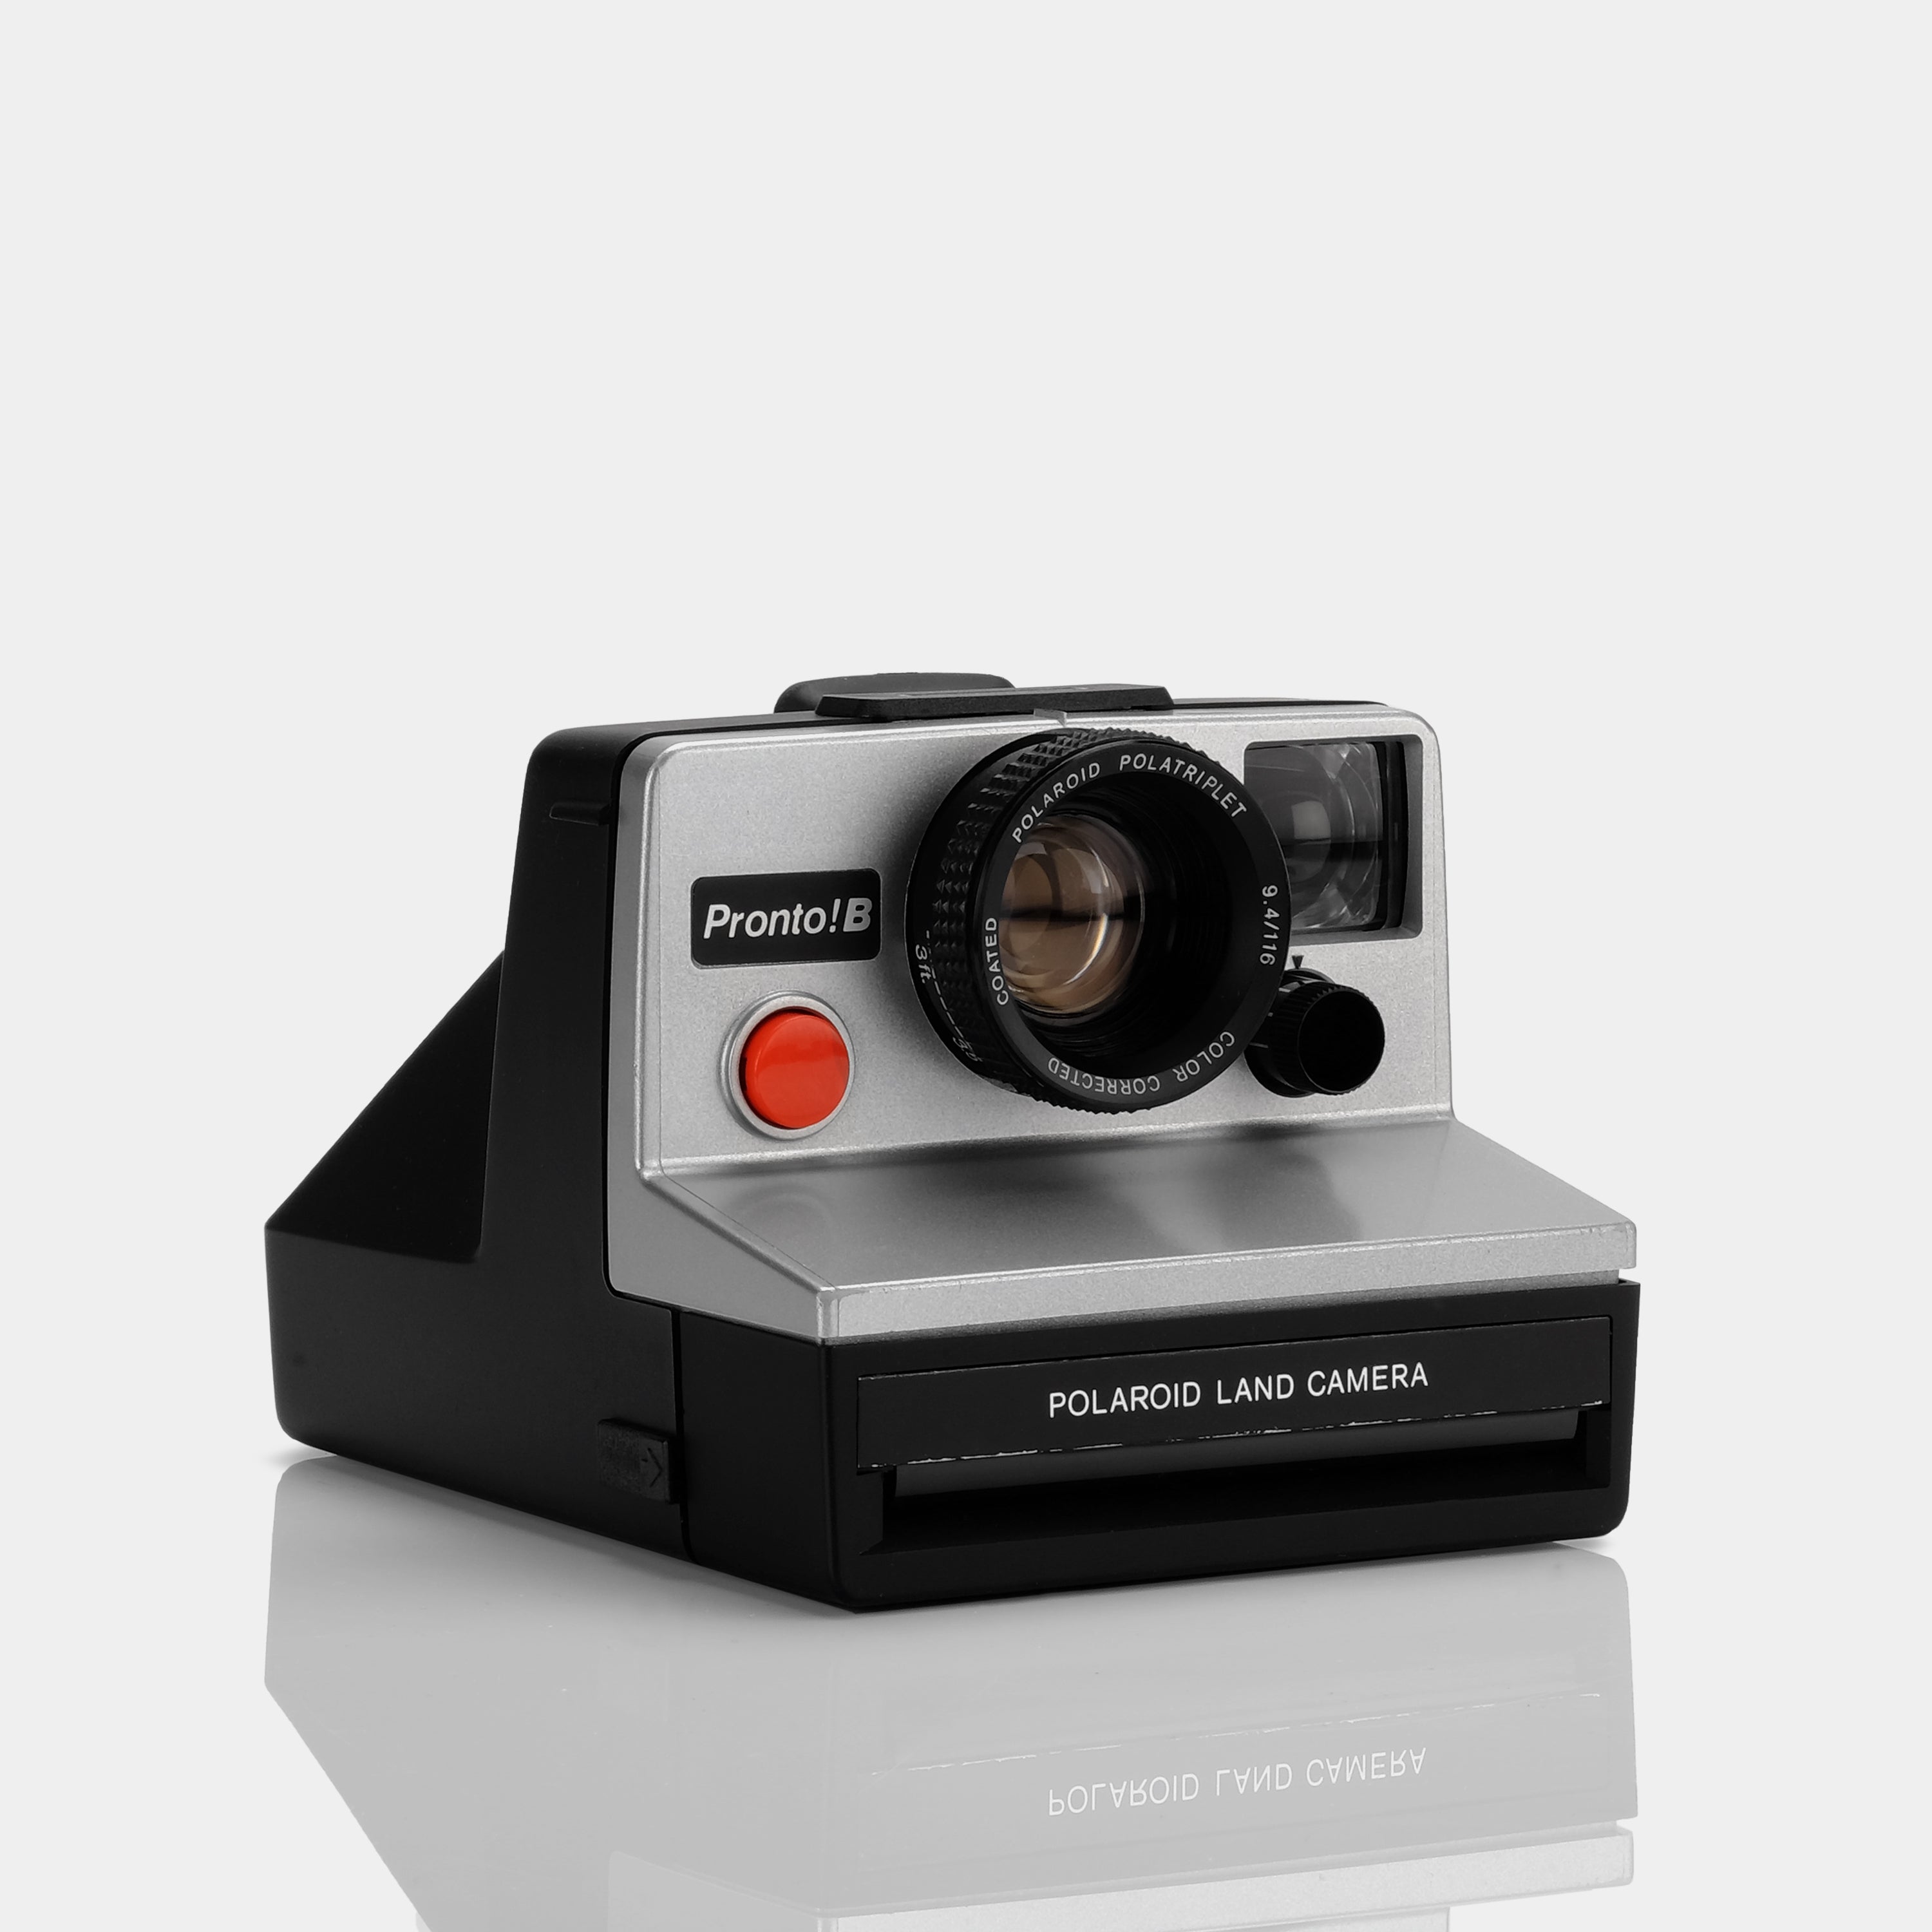 Polaroid SX-70 Pronto! B Silver Instant Film Camera